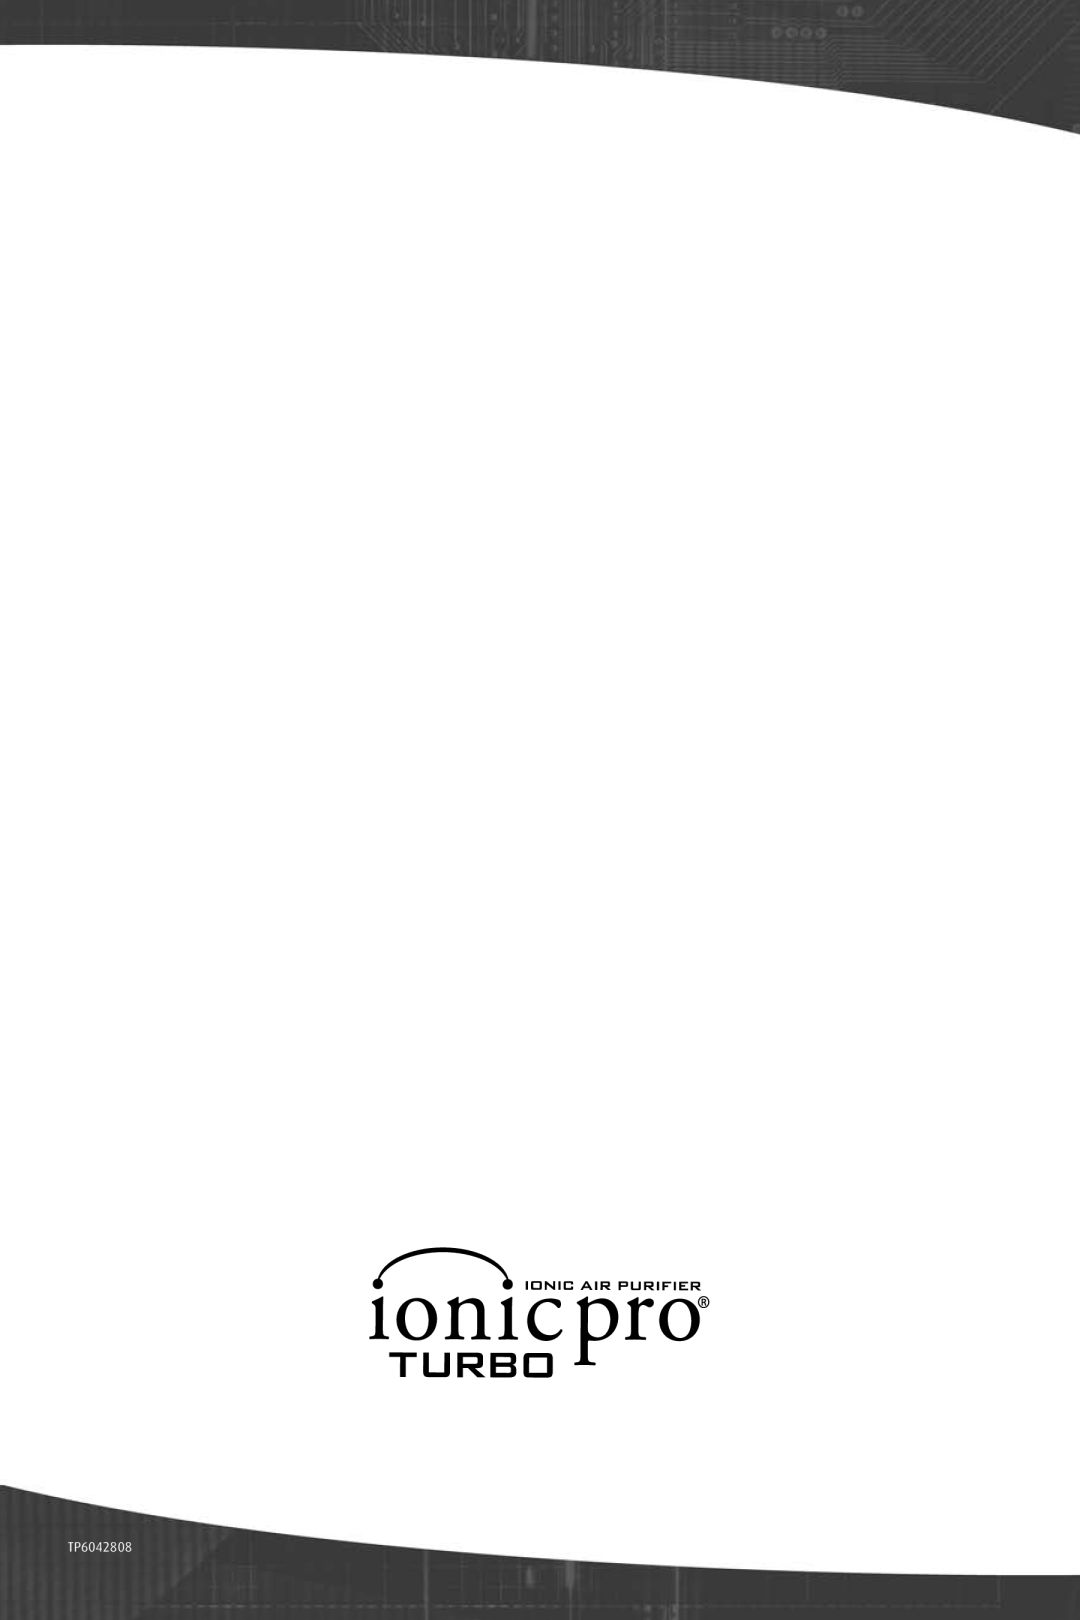 Ionic Pro TURBO manual TP6042808 